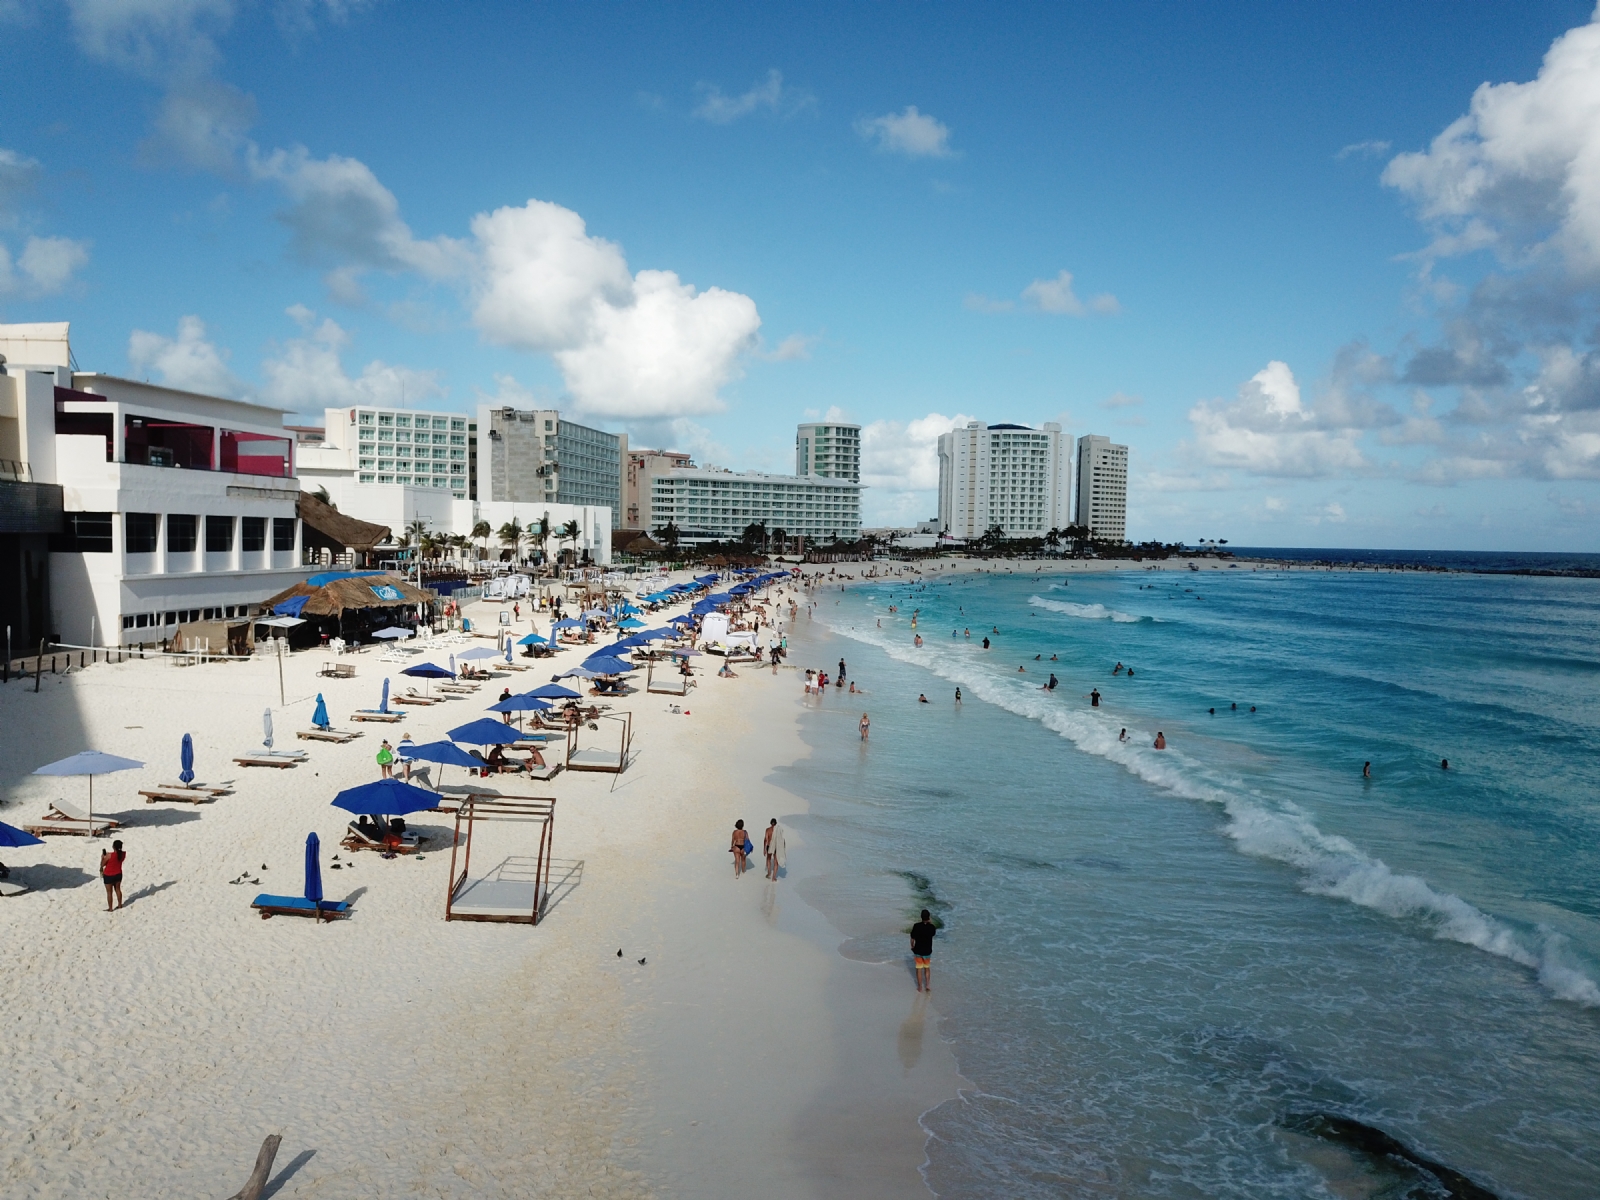 Dos de los lugares más emblemáticos para la infancia en Cancún ya no existen y uno permanece cerrado al público